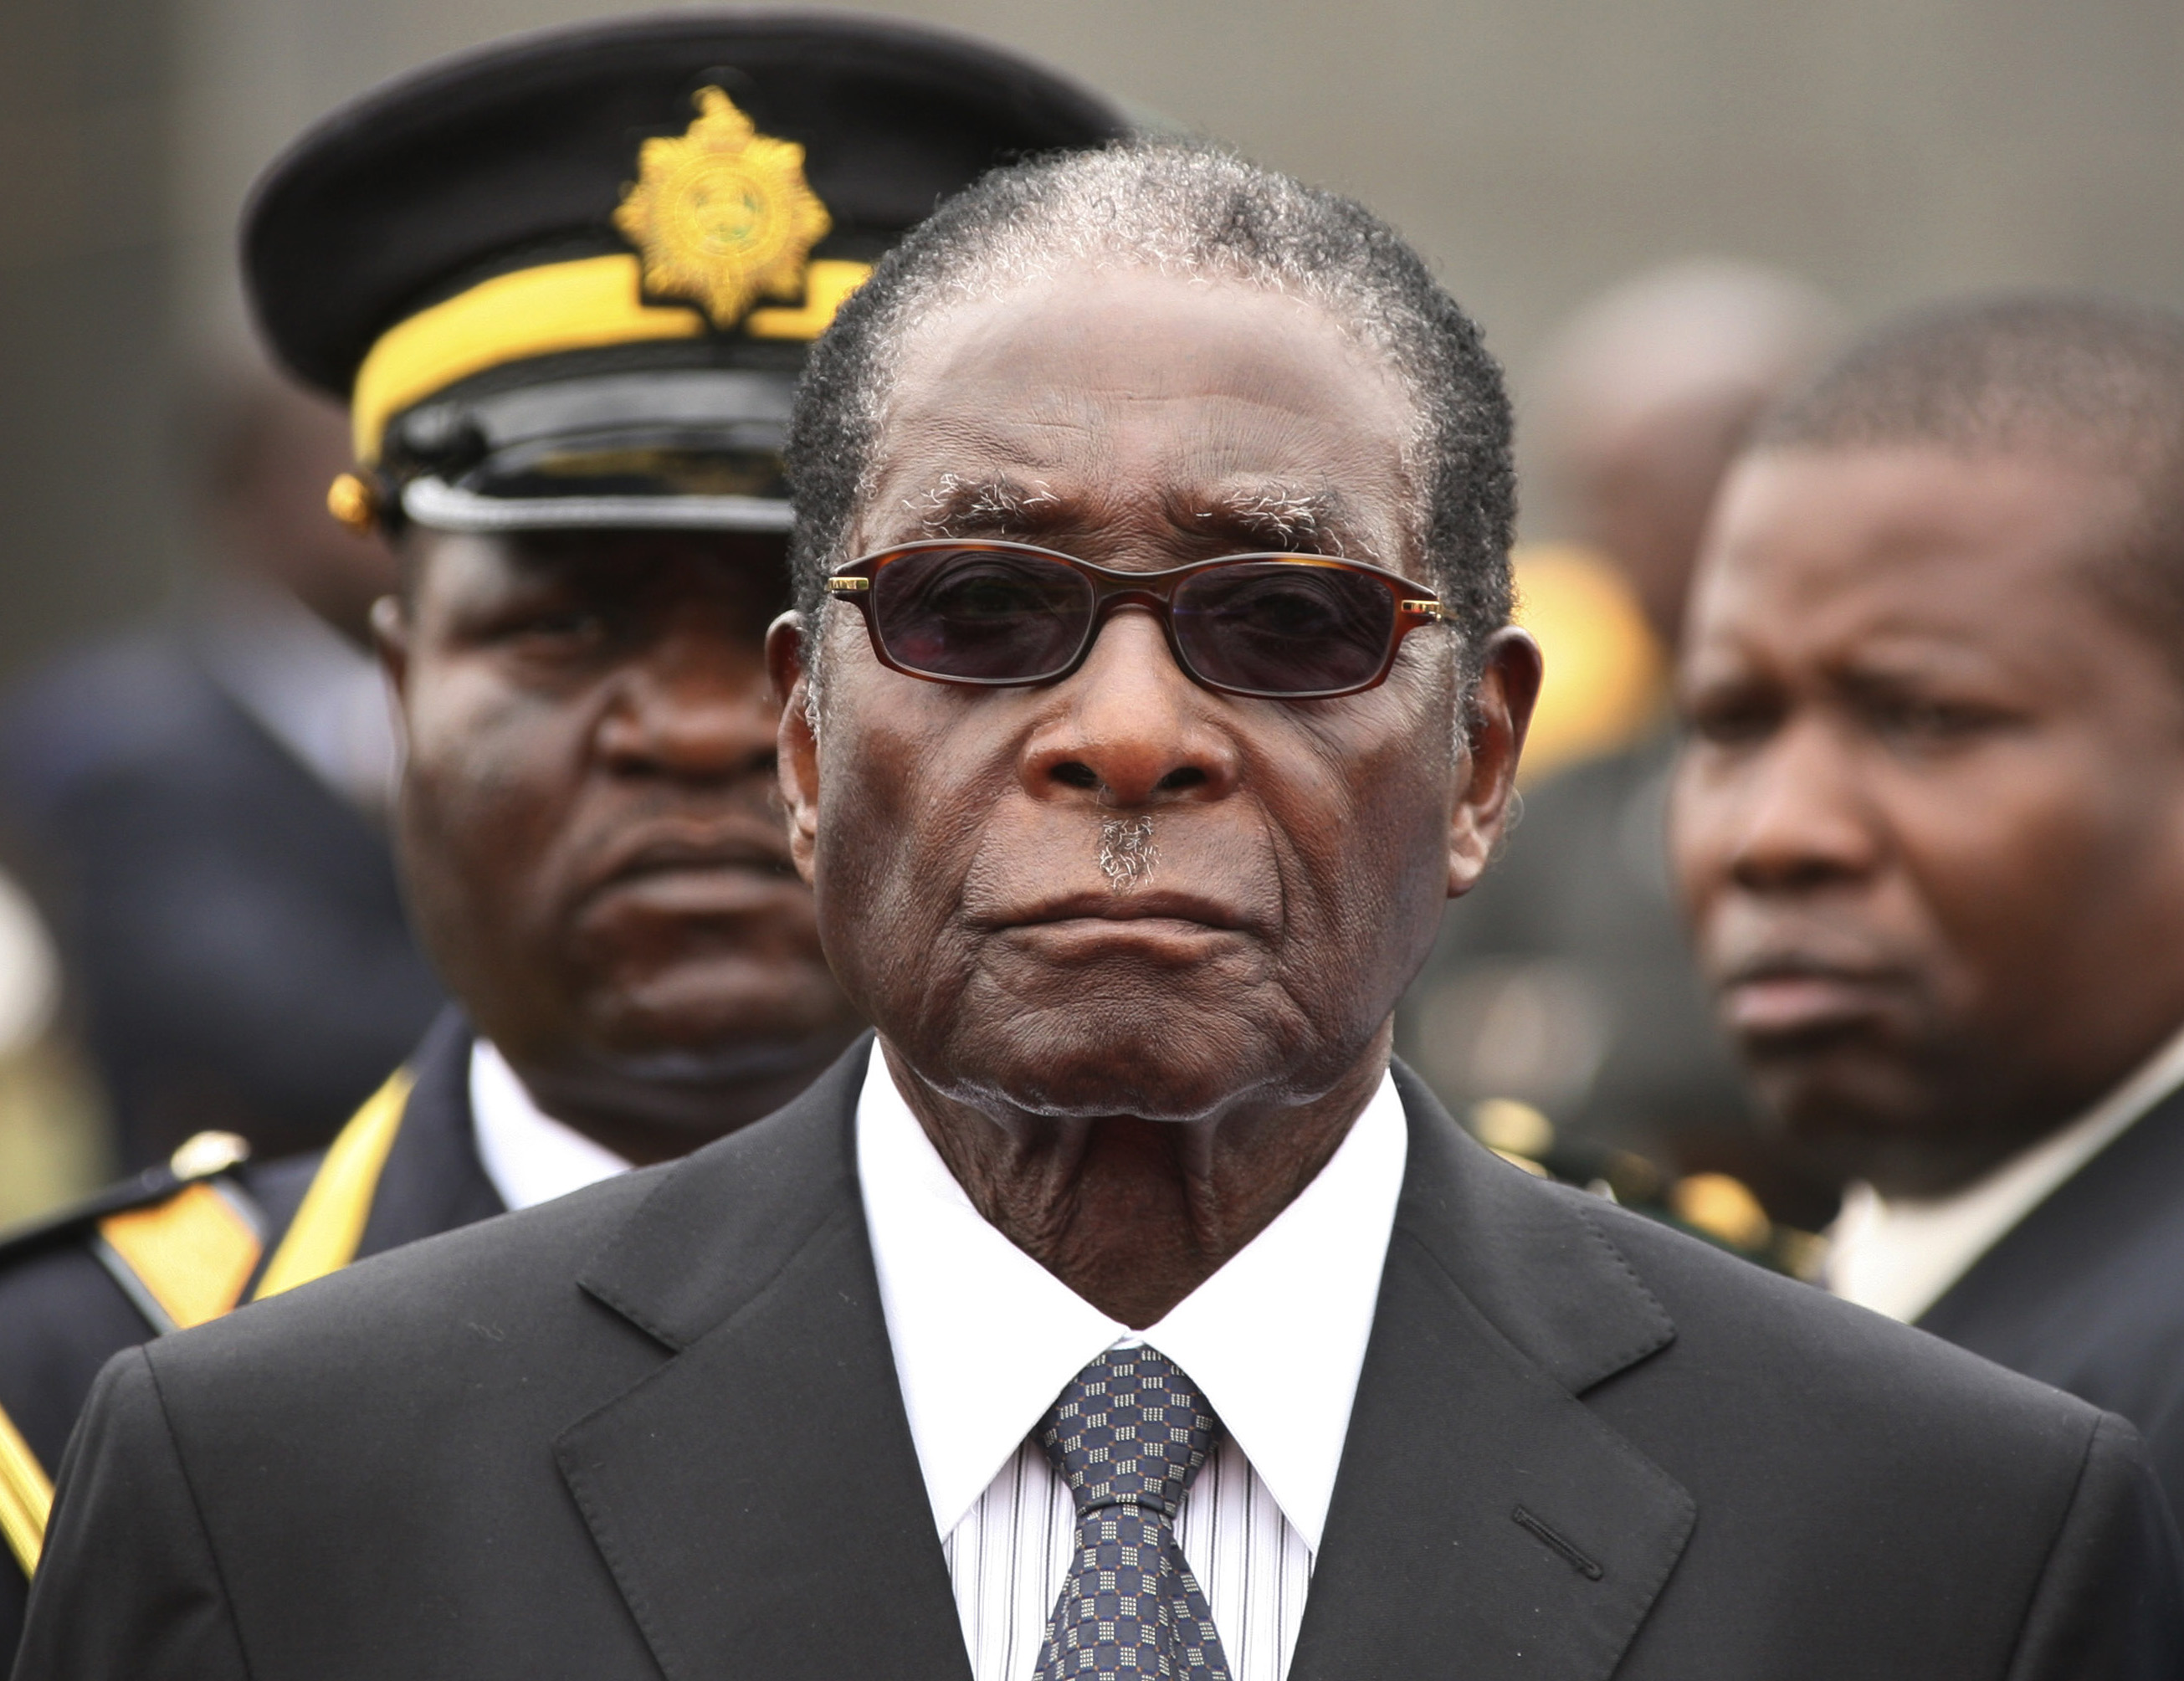 Robert Mugabe - Har styrt Zimbawe sedan 1980. Mugabe anklagas som många andra diktatorer för att rigga valen och kontrollera landets samtliga medier. Hans främsta politiska utmanare, Morgan Tsvangirai, har flera gånger utsatts för fysiska angrepp. Sedan 2